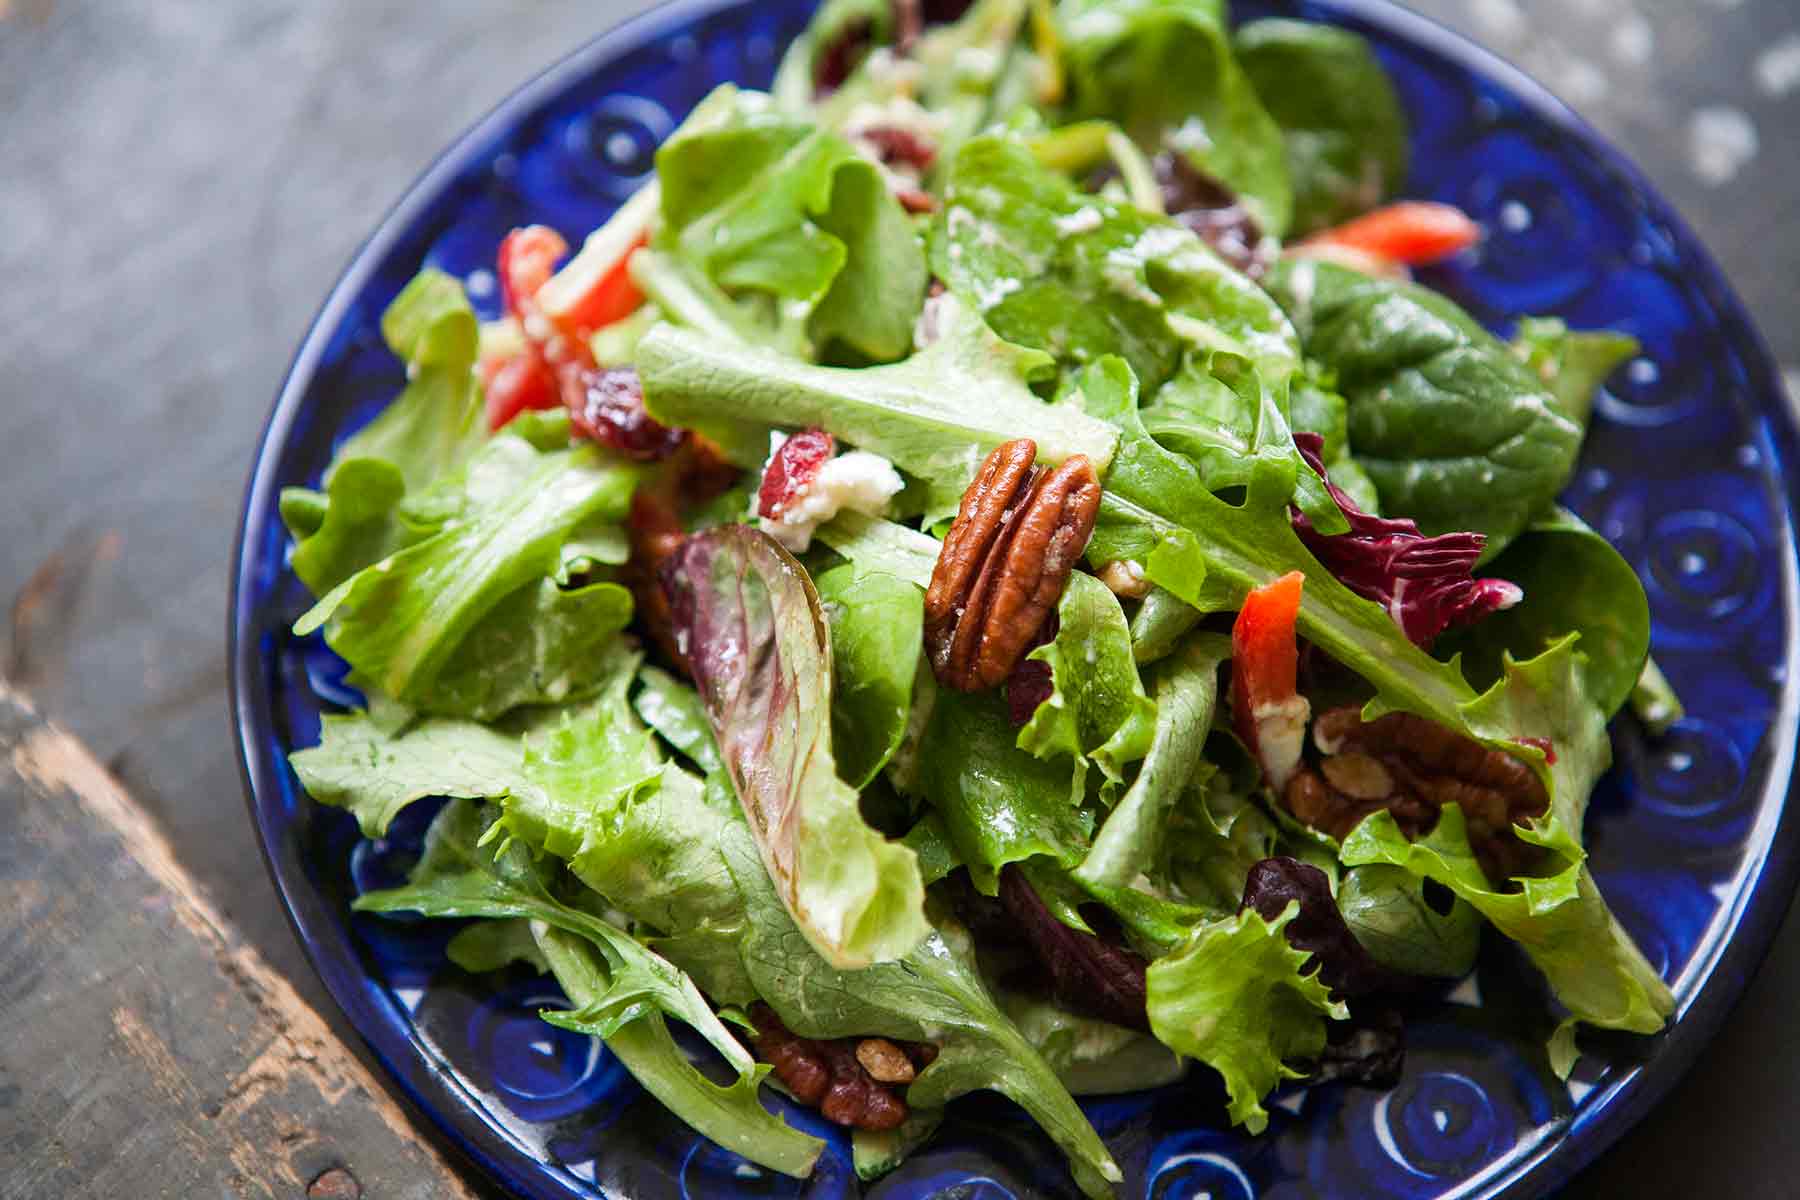 The Authentic Caesar Salad